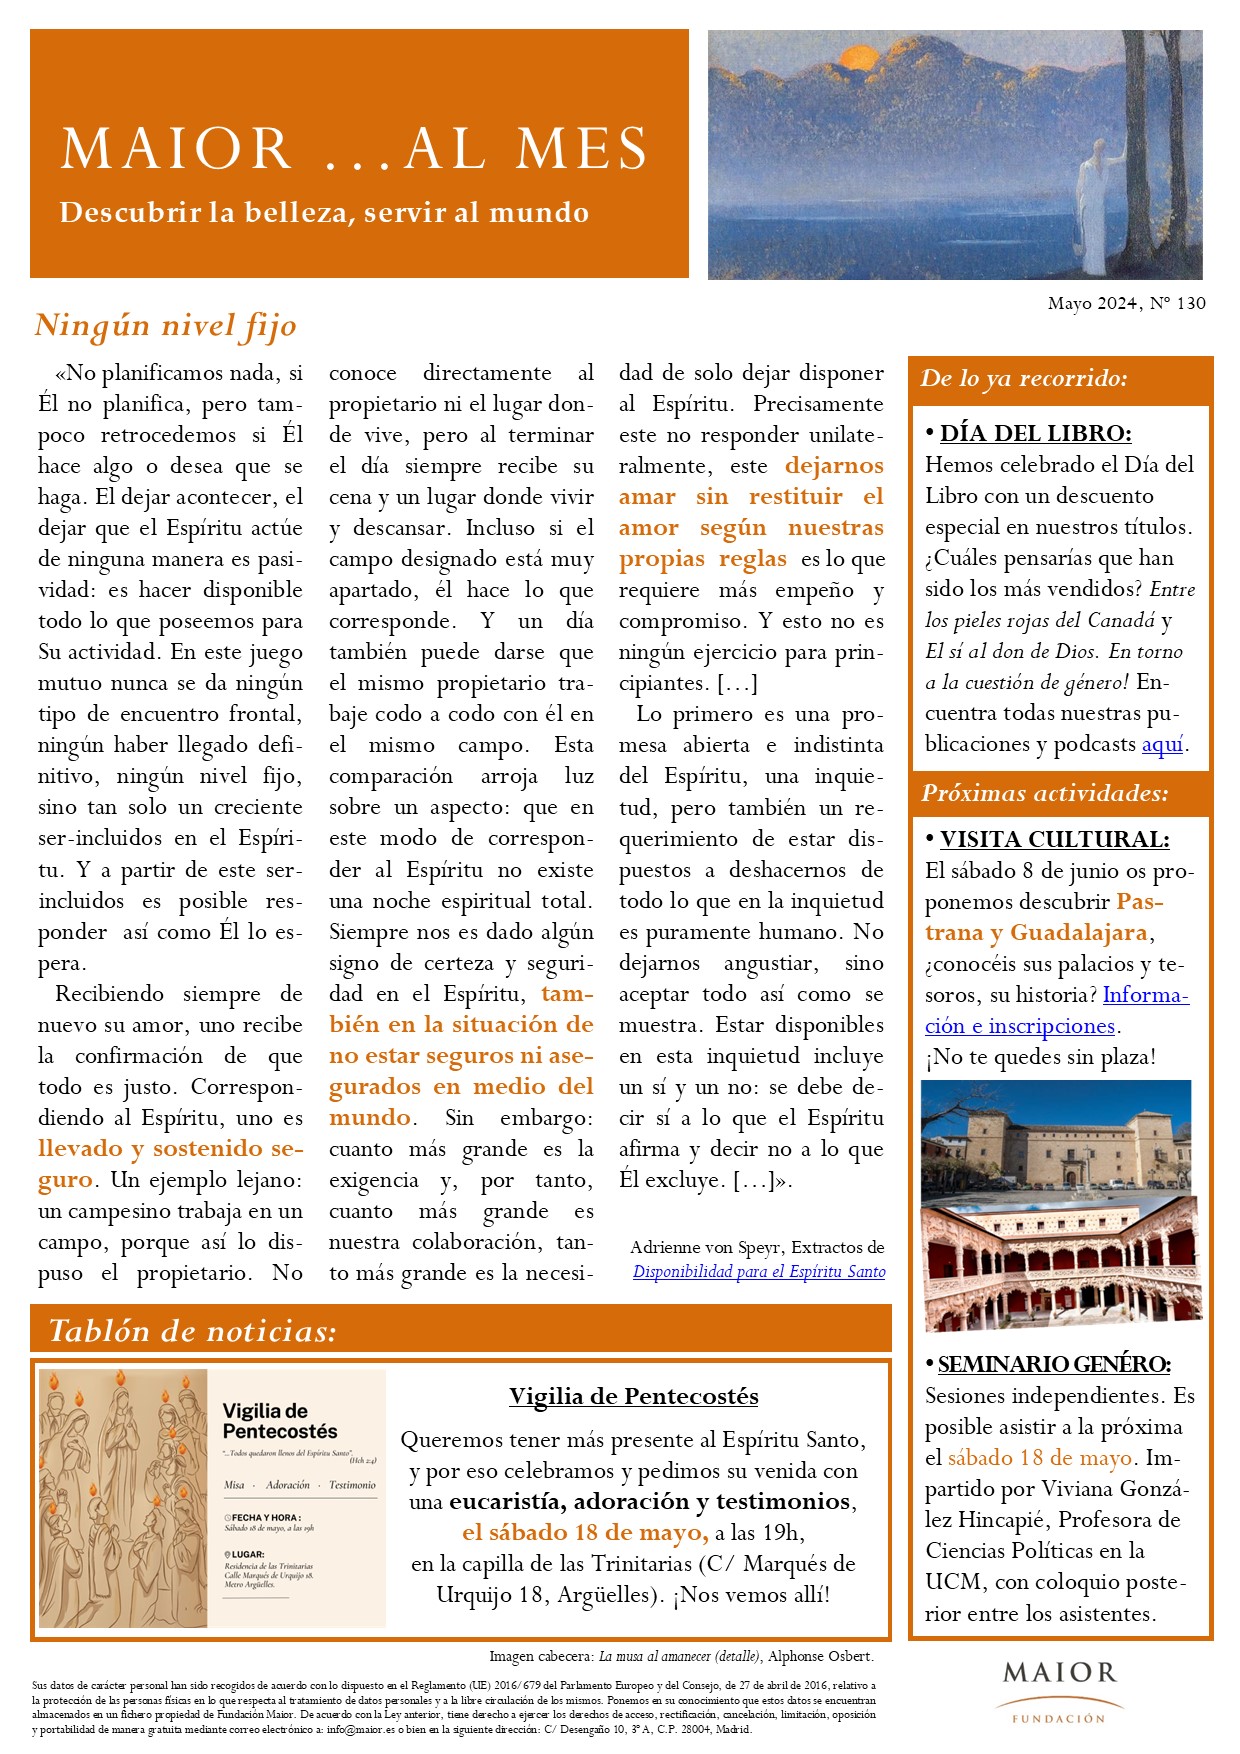 Boletín mensual de noticias y actividades de la Fundación Maior. Edición de mayo 2024